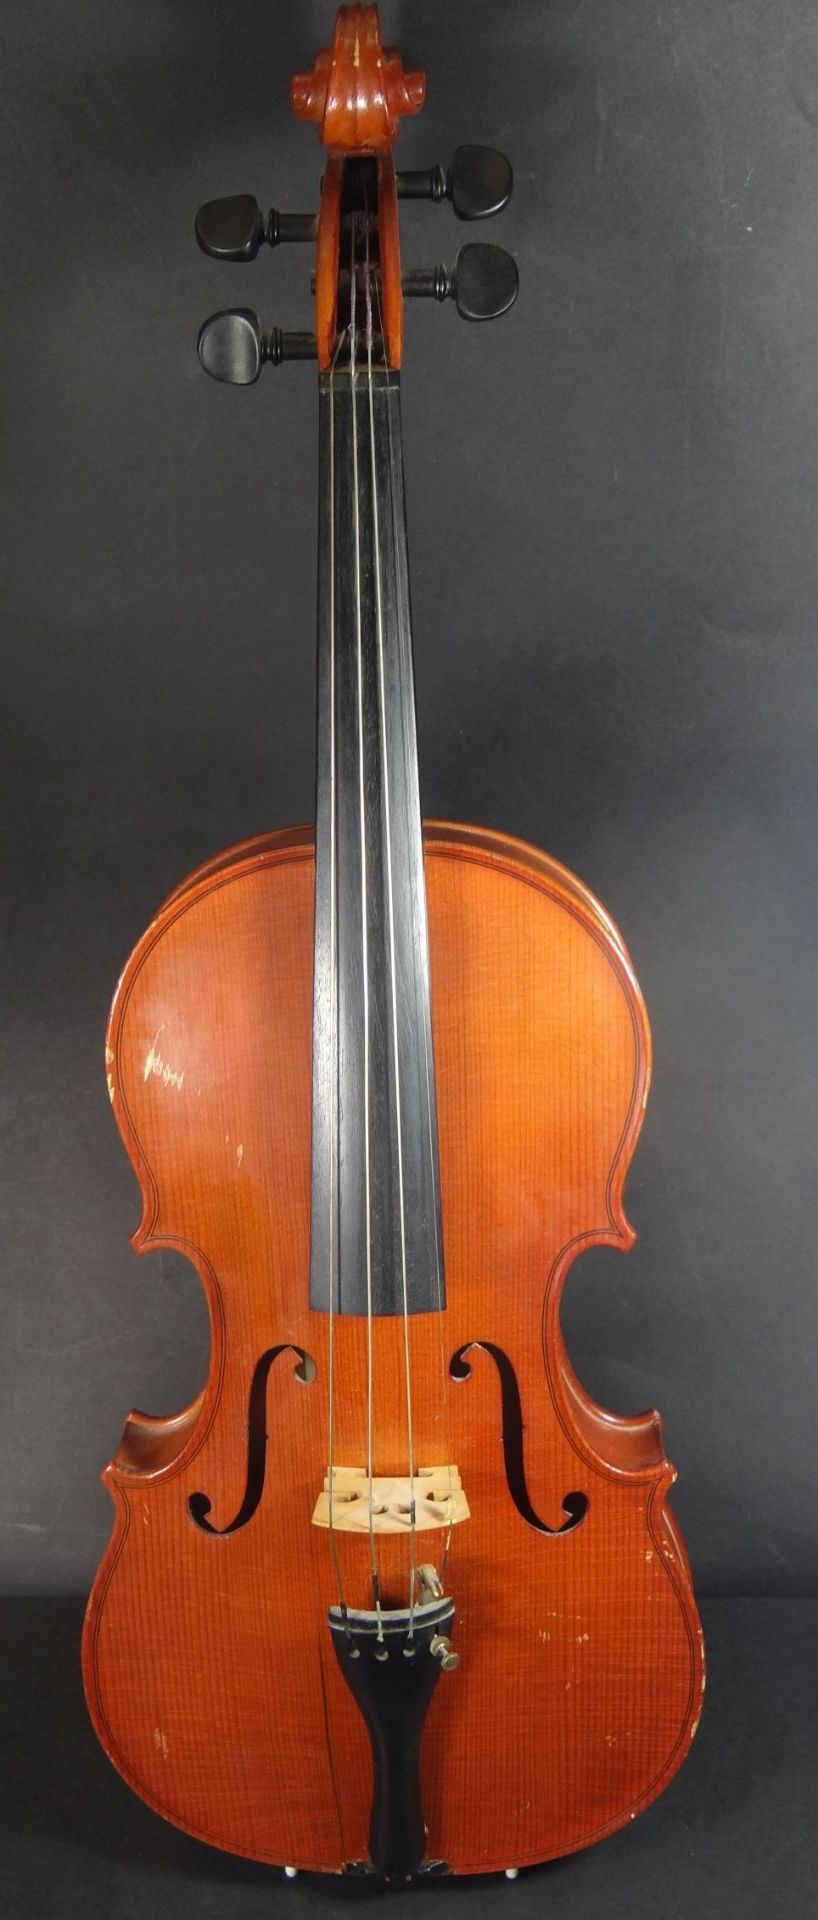 Violine , innen Etikette "Tartini Konzert Violine" Model Strradivarius 1725, Kratzer, einige